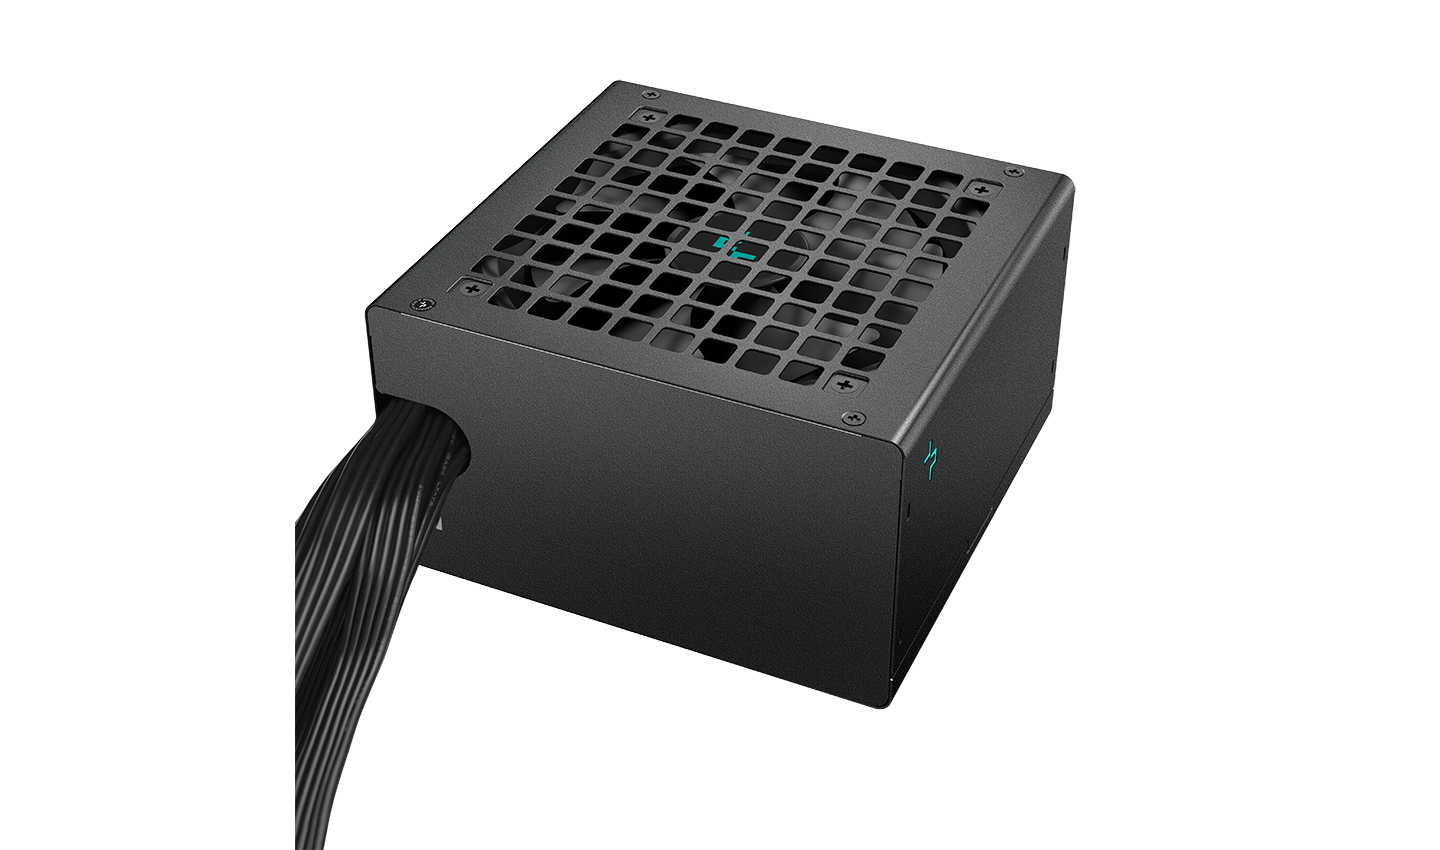 Блок питания Deepcool PL550D (ATX 3.0, 550W, PWM 120mm fan, Active PFC+DC to DC, 80+ BRONZE) RET